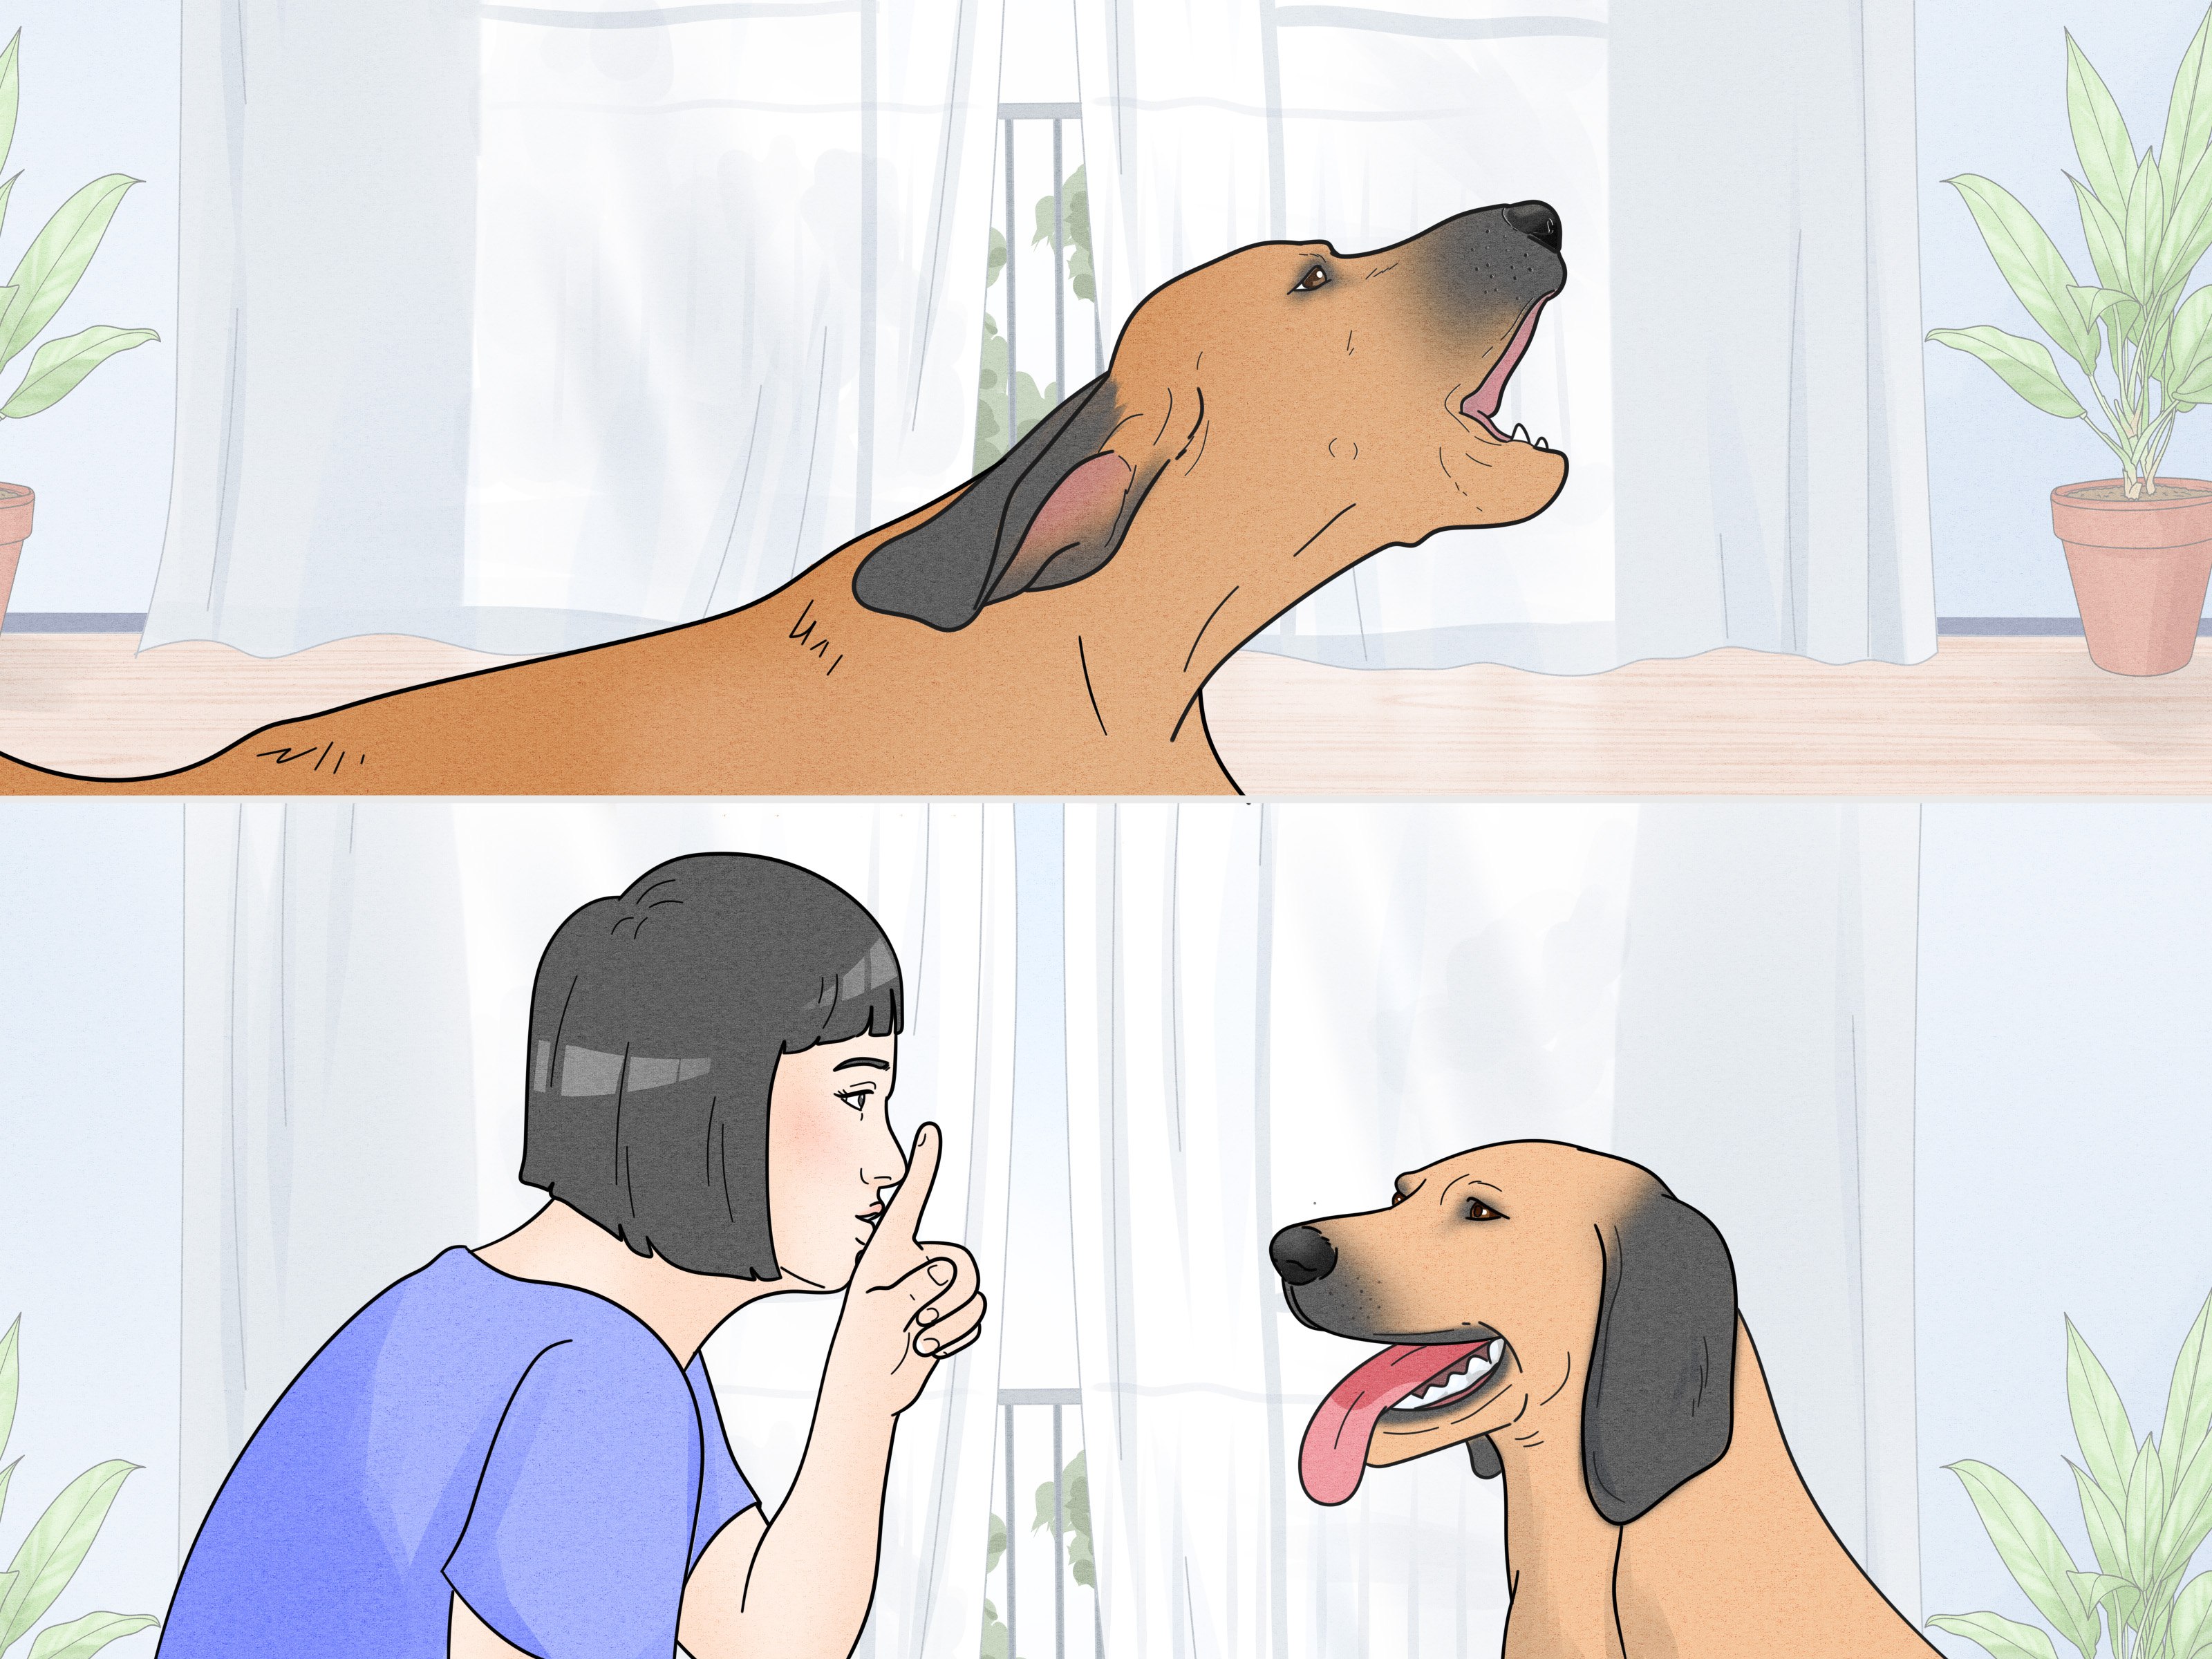 Как отучить собаку гавкать